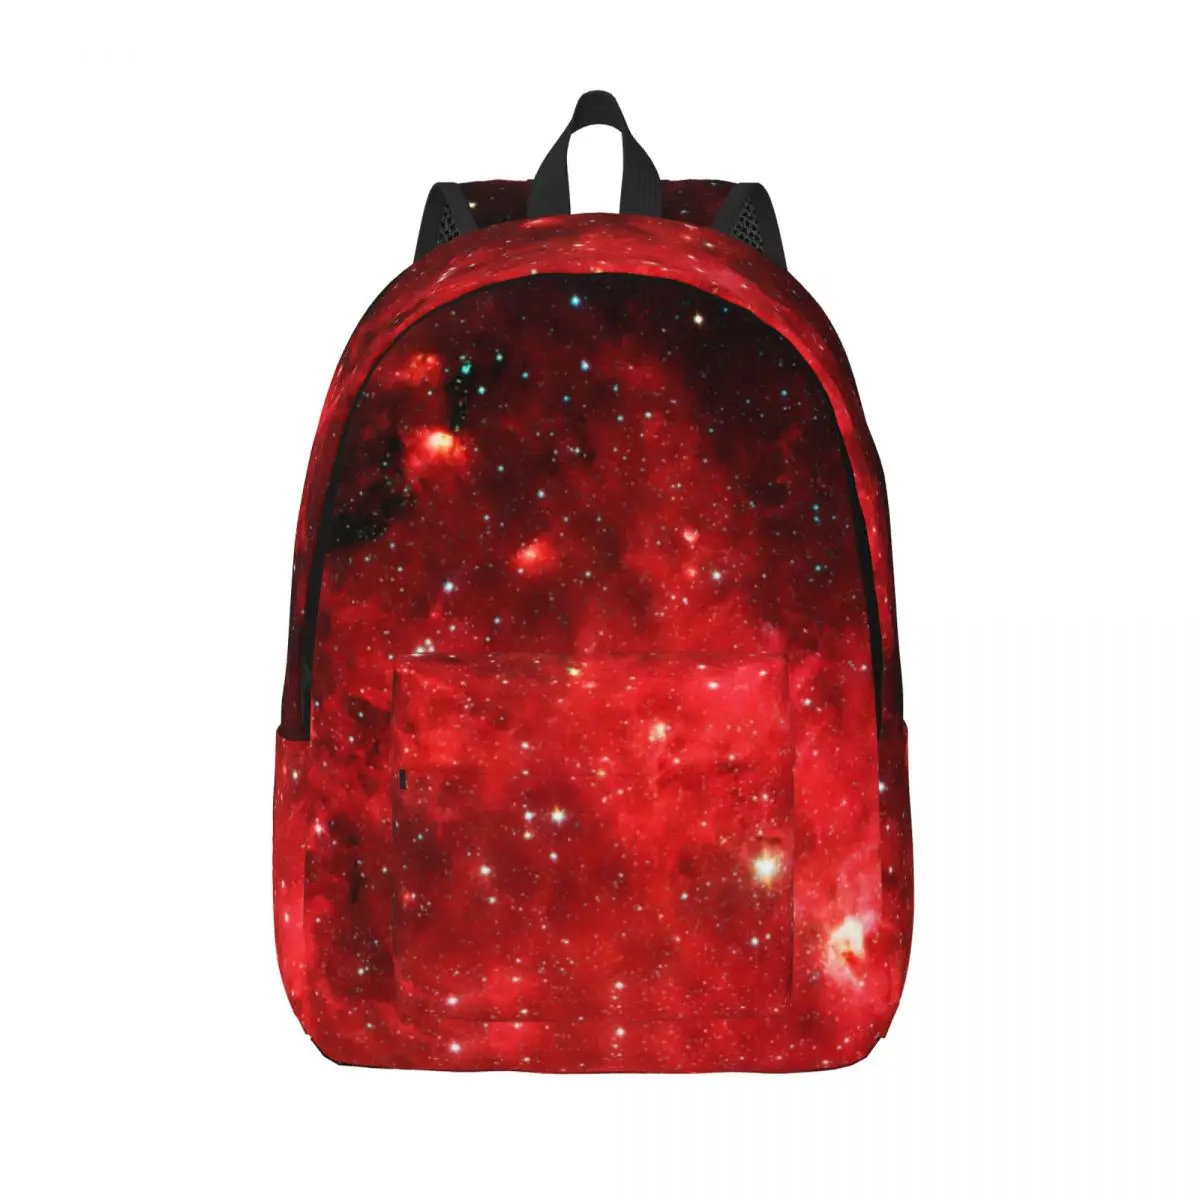 

Рюкзак с принтом в космосе, рюкзаки для трекинга в стиле Галактики, забавные школьные ранцы унисекс для студентов, высококачественный легкий рюкзак